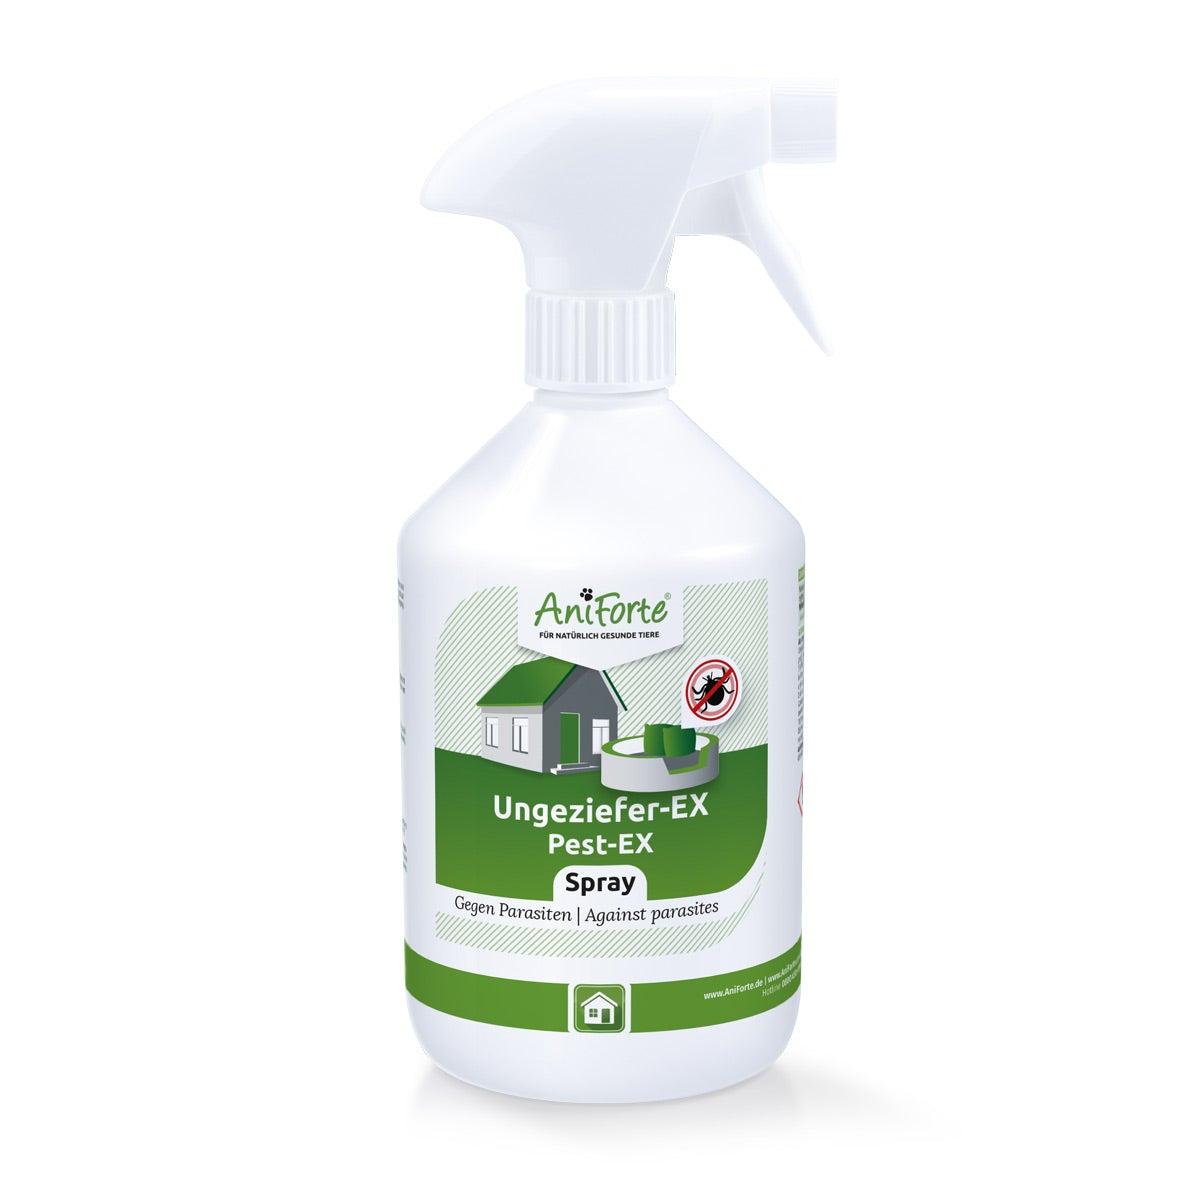 aniforte Ungeziefer-EX Spray - 500 Milliliter